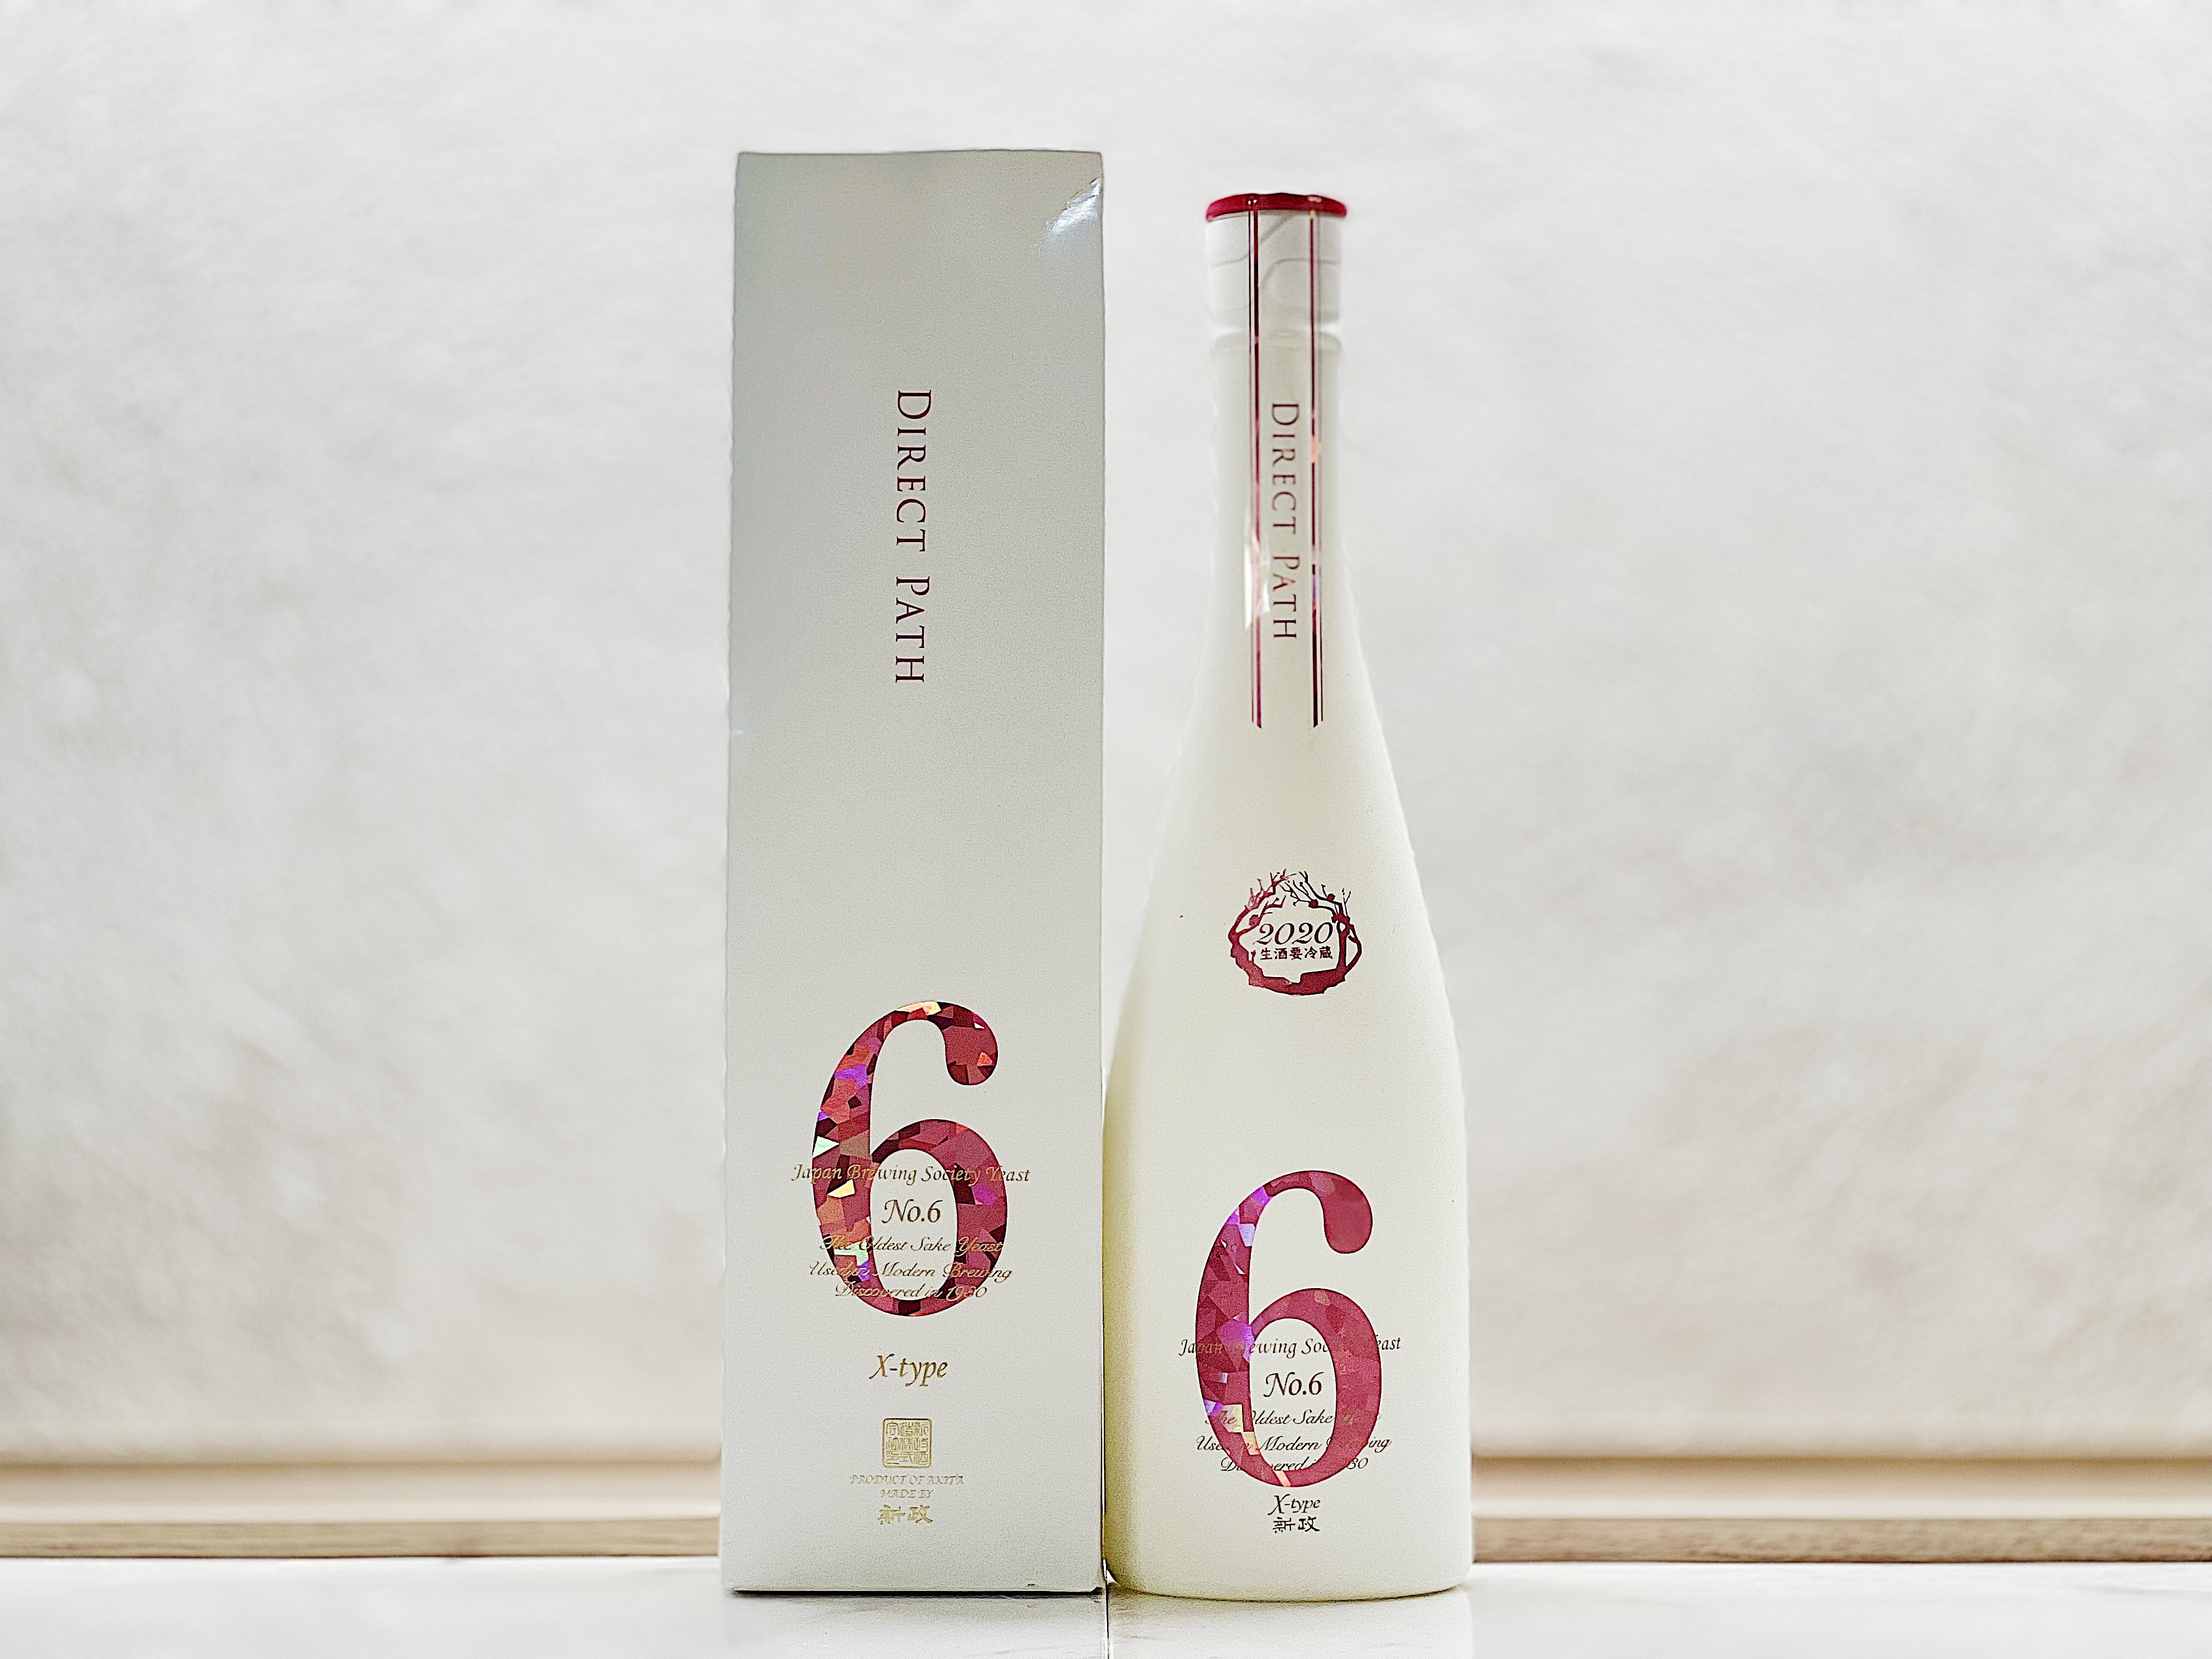 新政NO.6X-typeﾀﾞｲﾚｸﾄﾊﾟｽ✖︎ 新政NO.6X-type - 酒